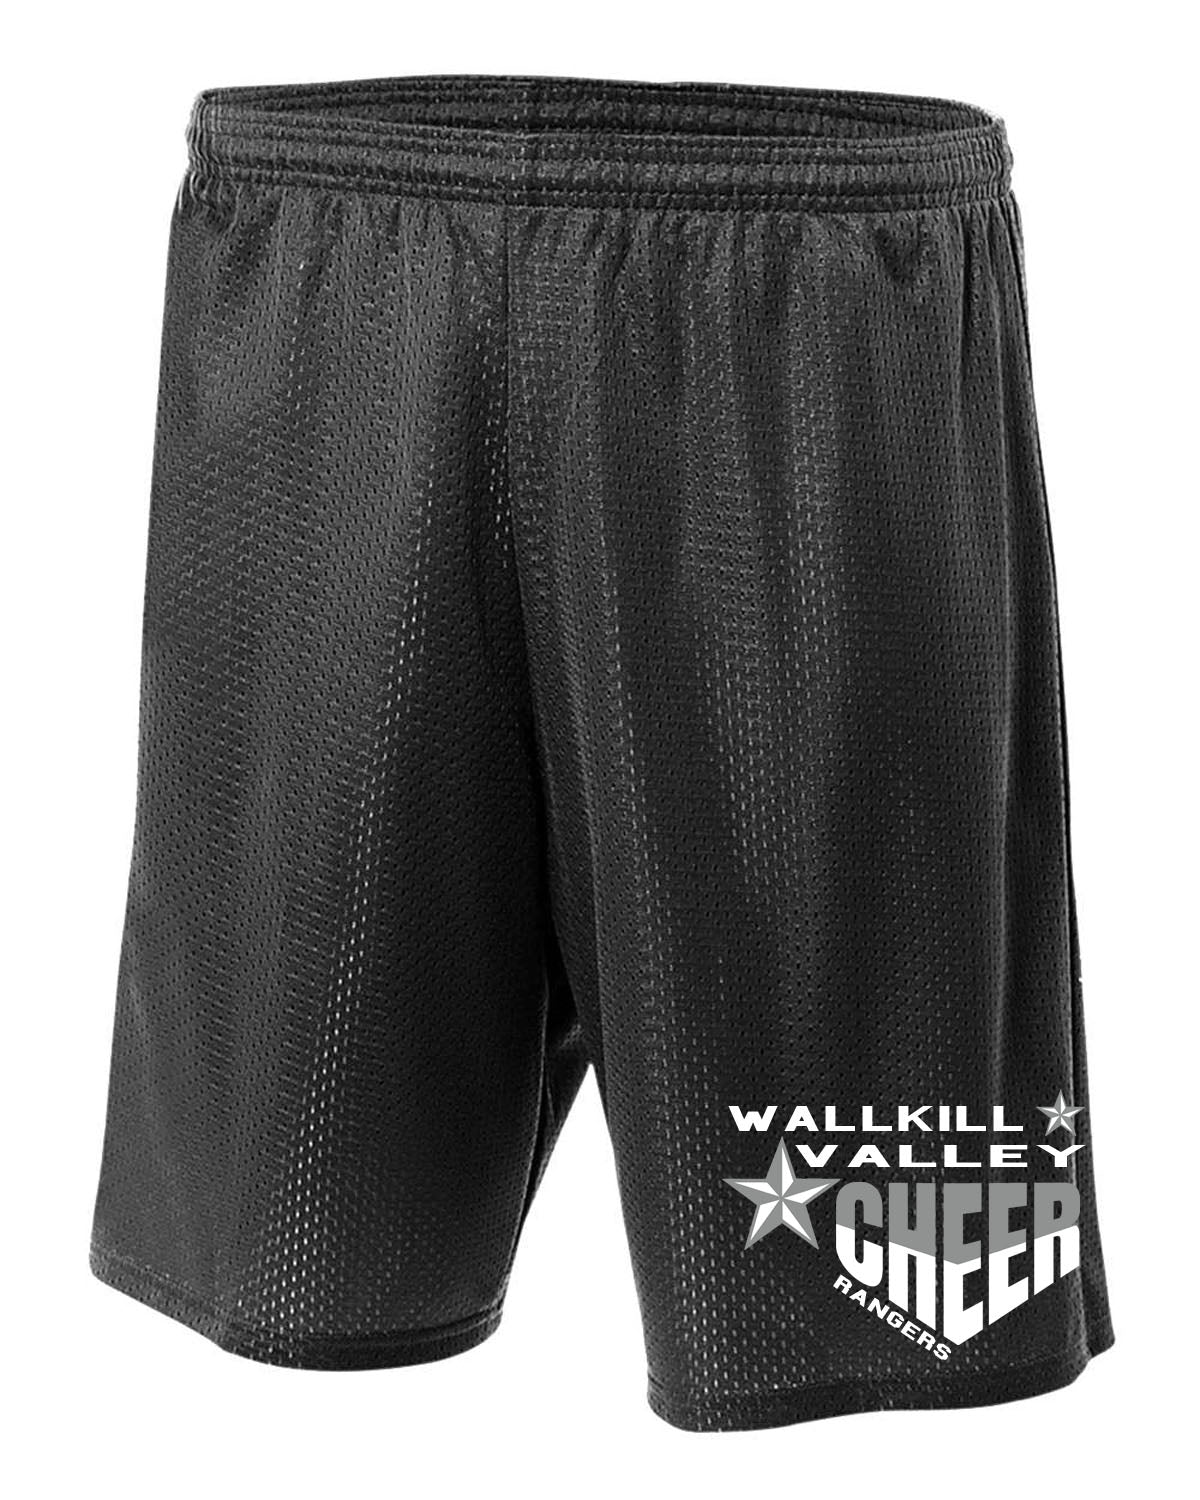 Wallkill Cheer Design 5 Mesh Shorts